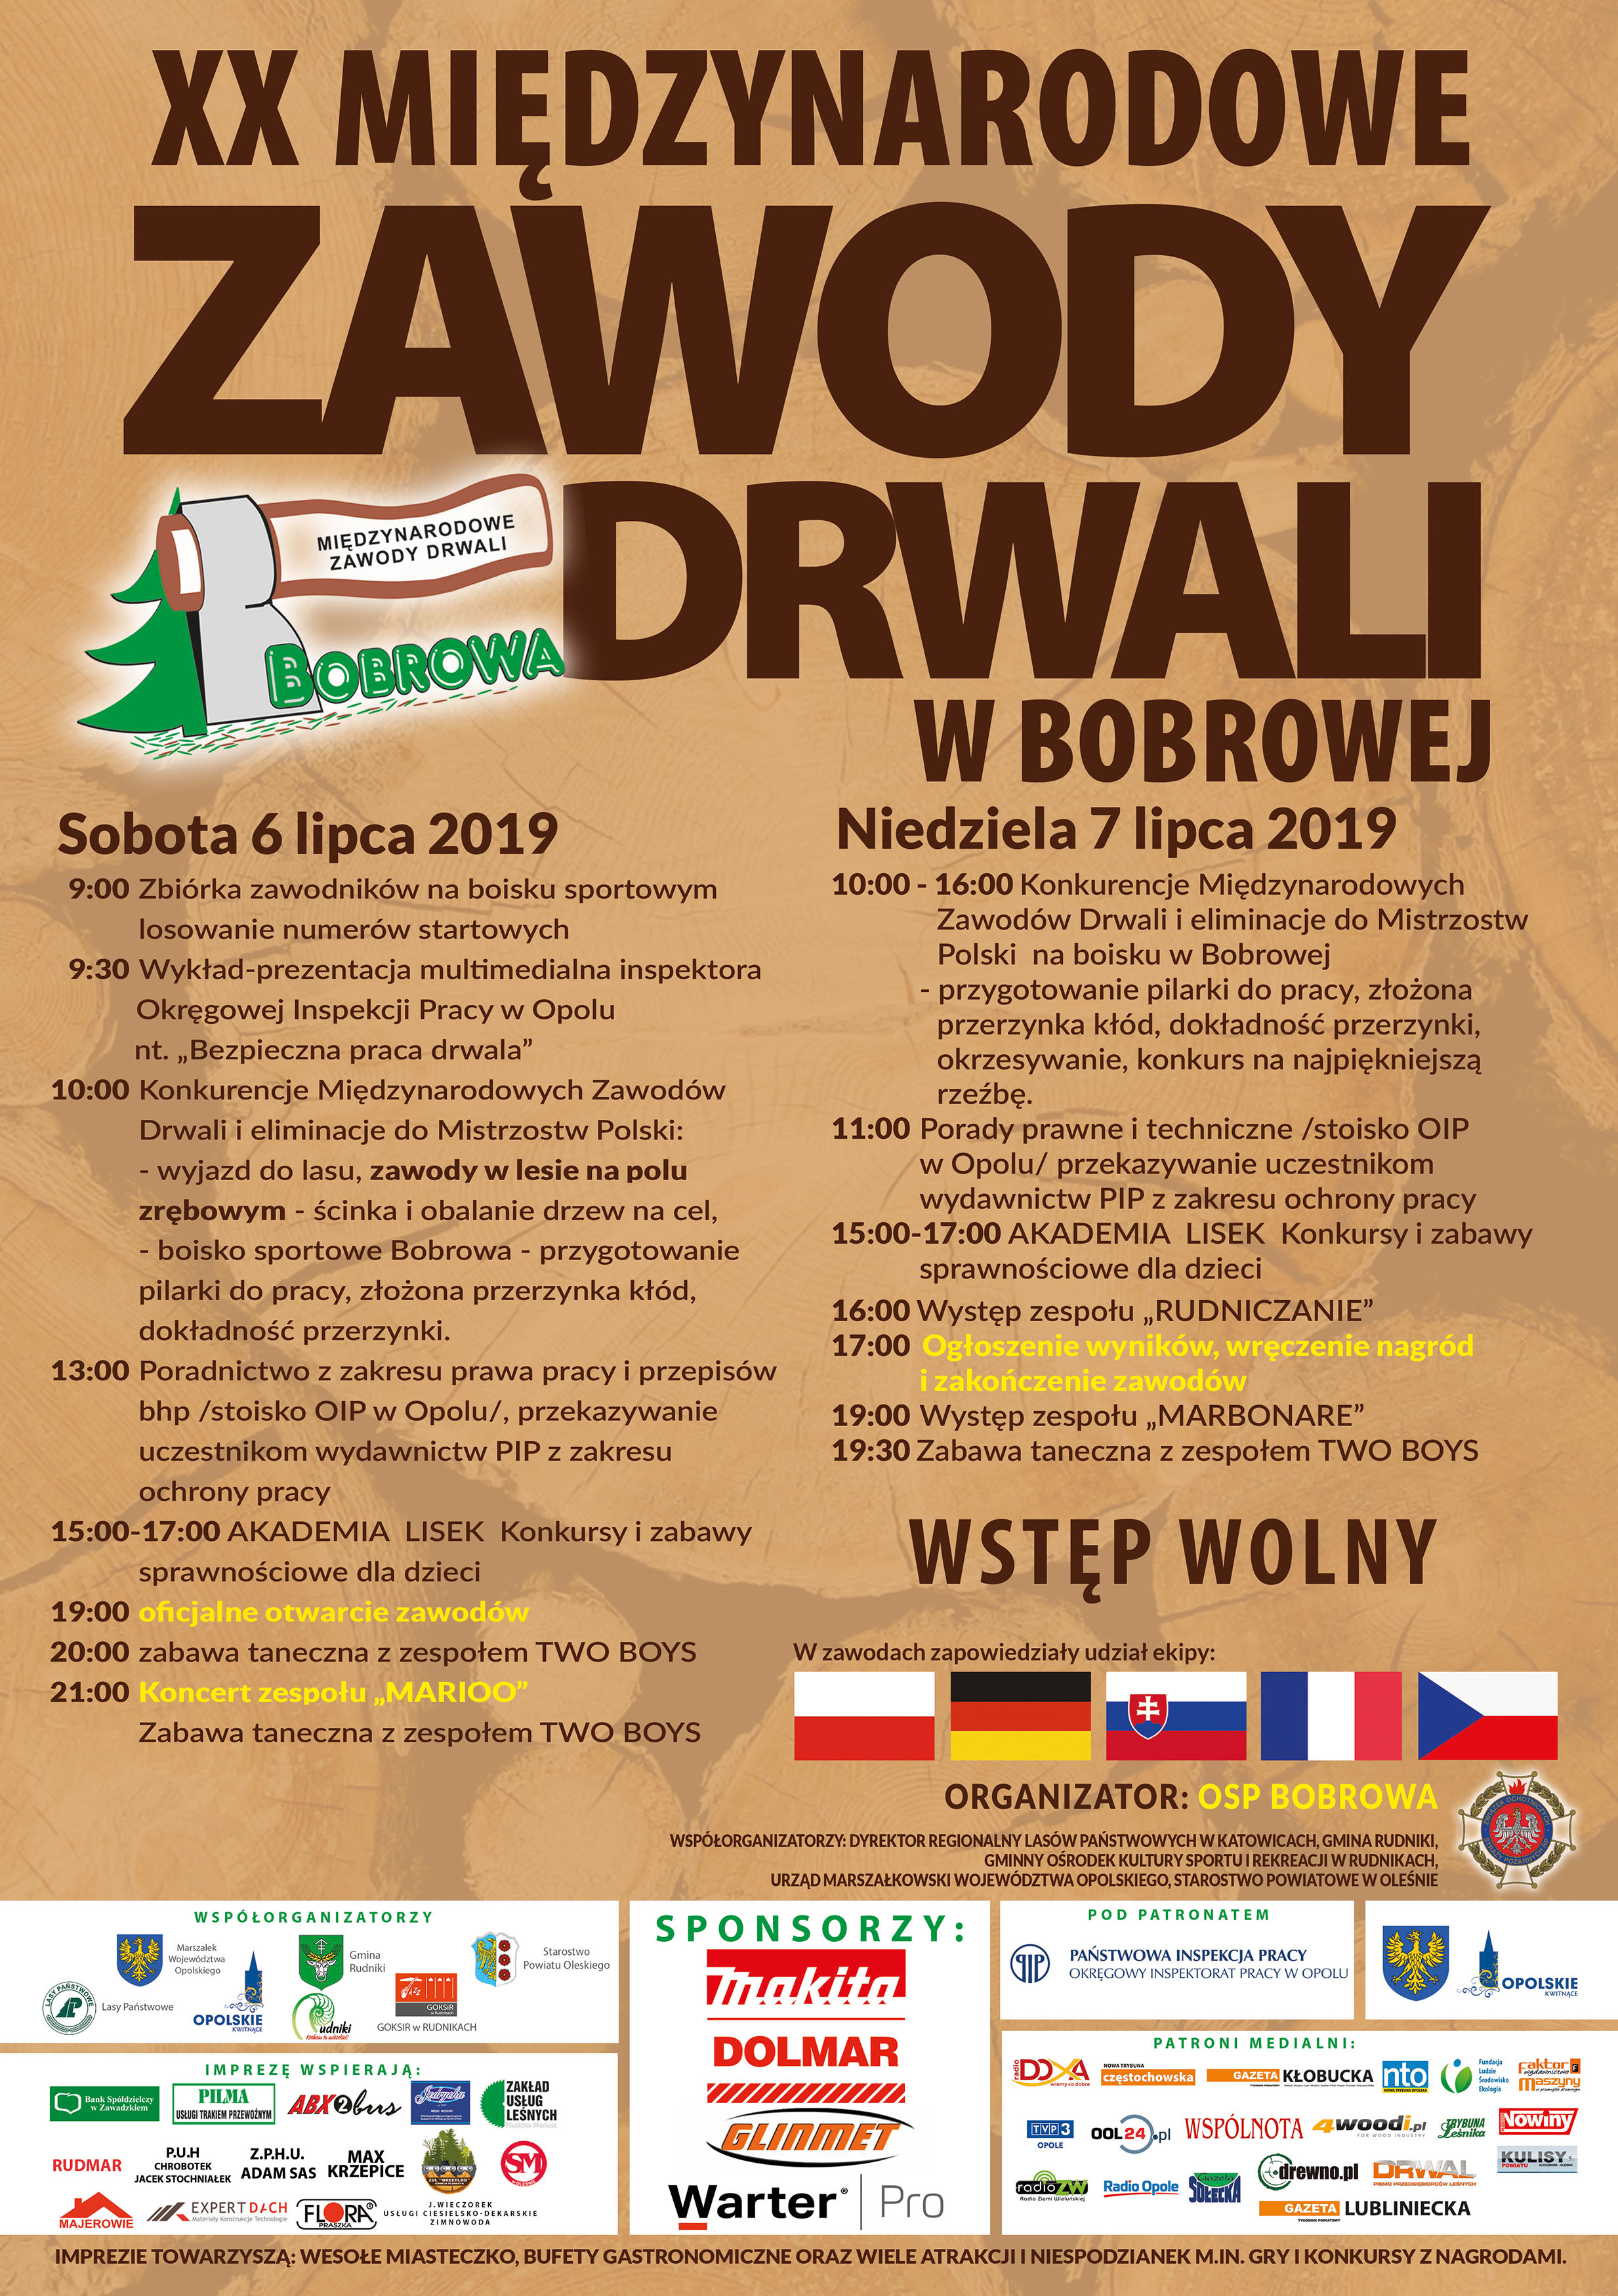 XX Międzynarodowe Zawody Drwali w Bobrowej